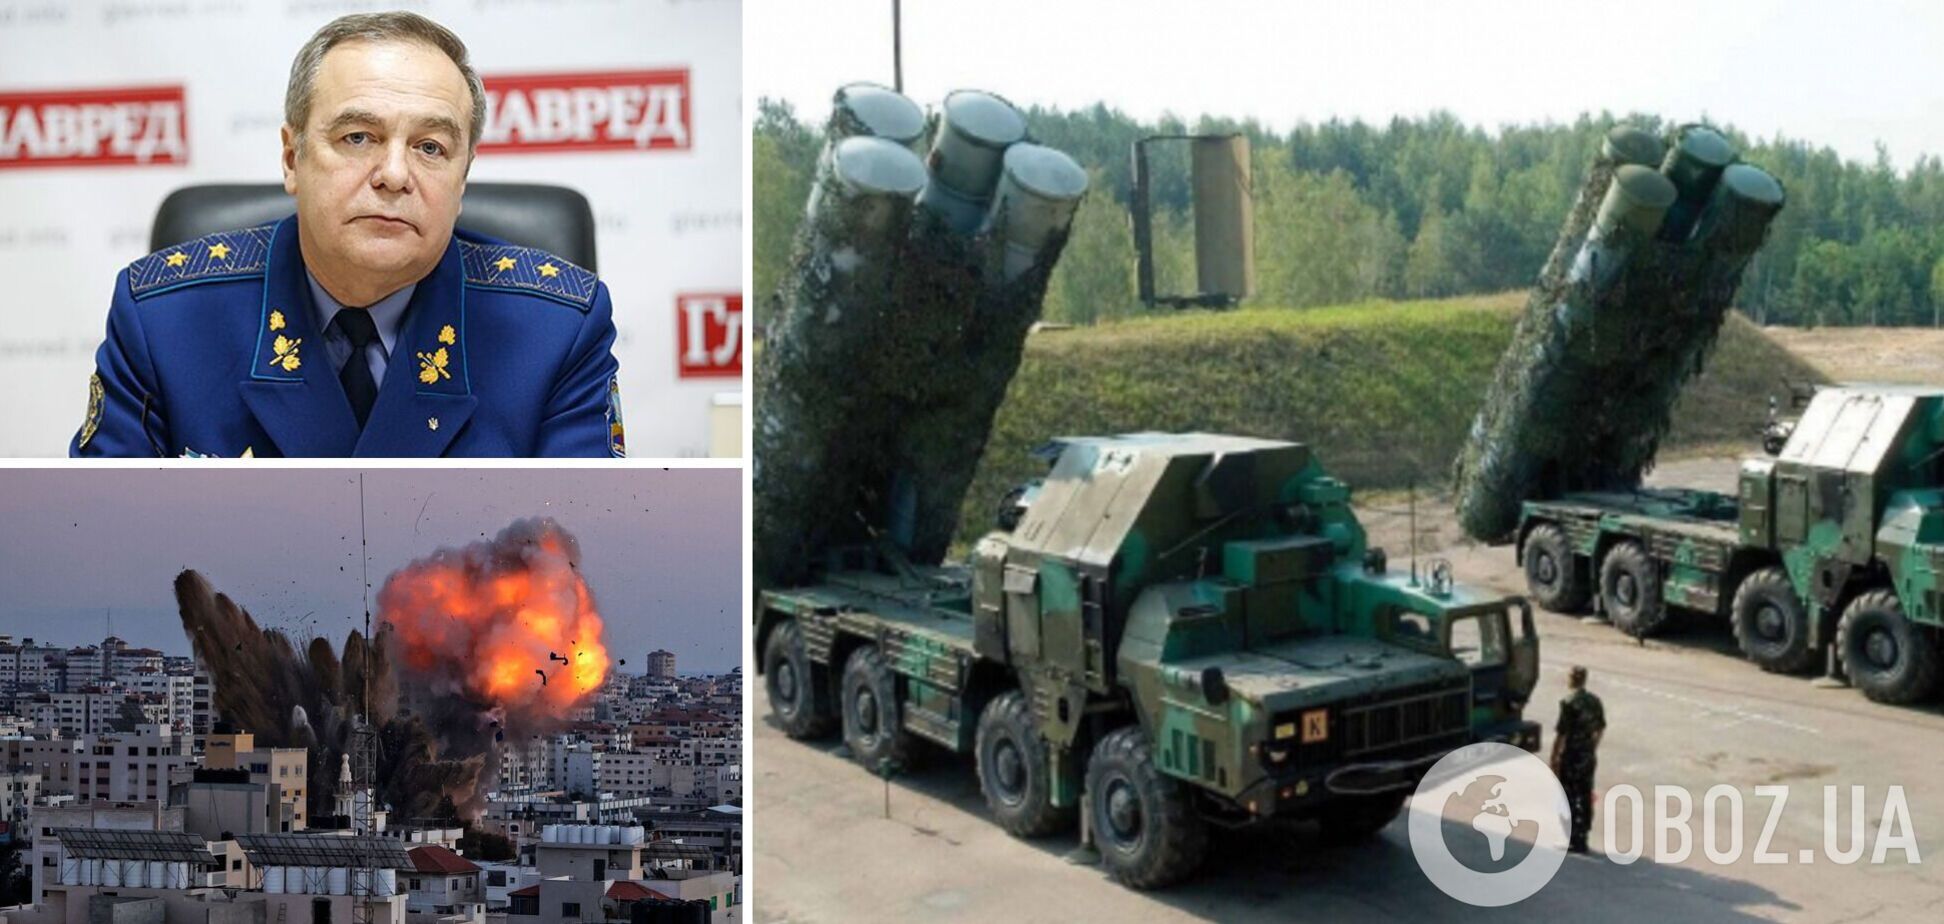 Генерал Романенко: РФ может получить еще 6 тысяч ракет, но наше 'бавовнятко' работает. Интервью